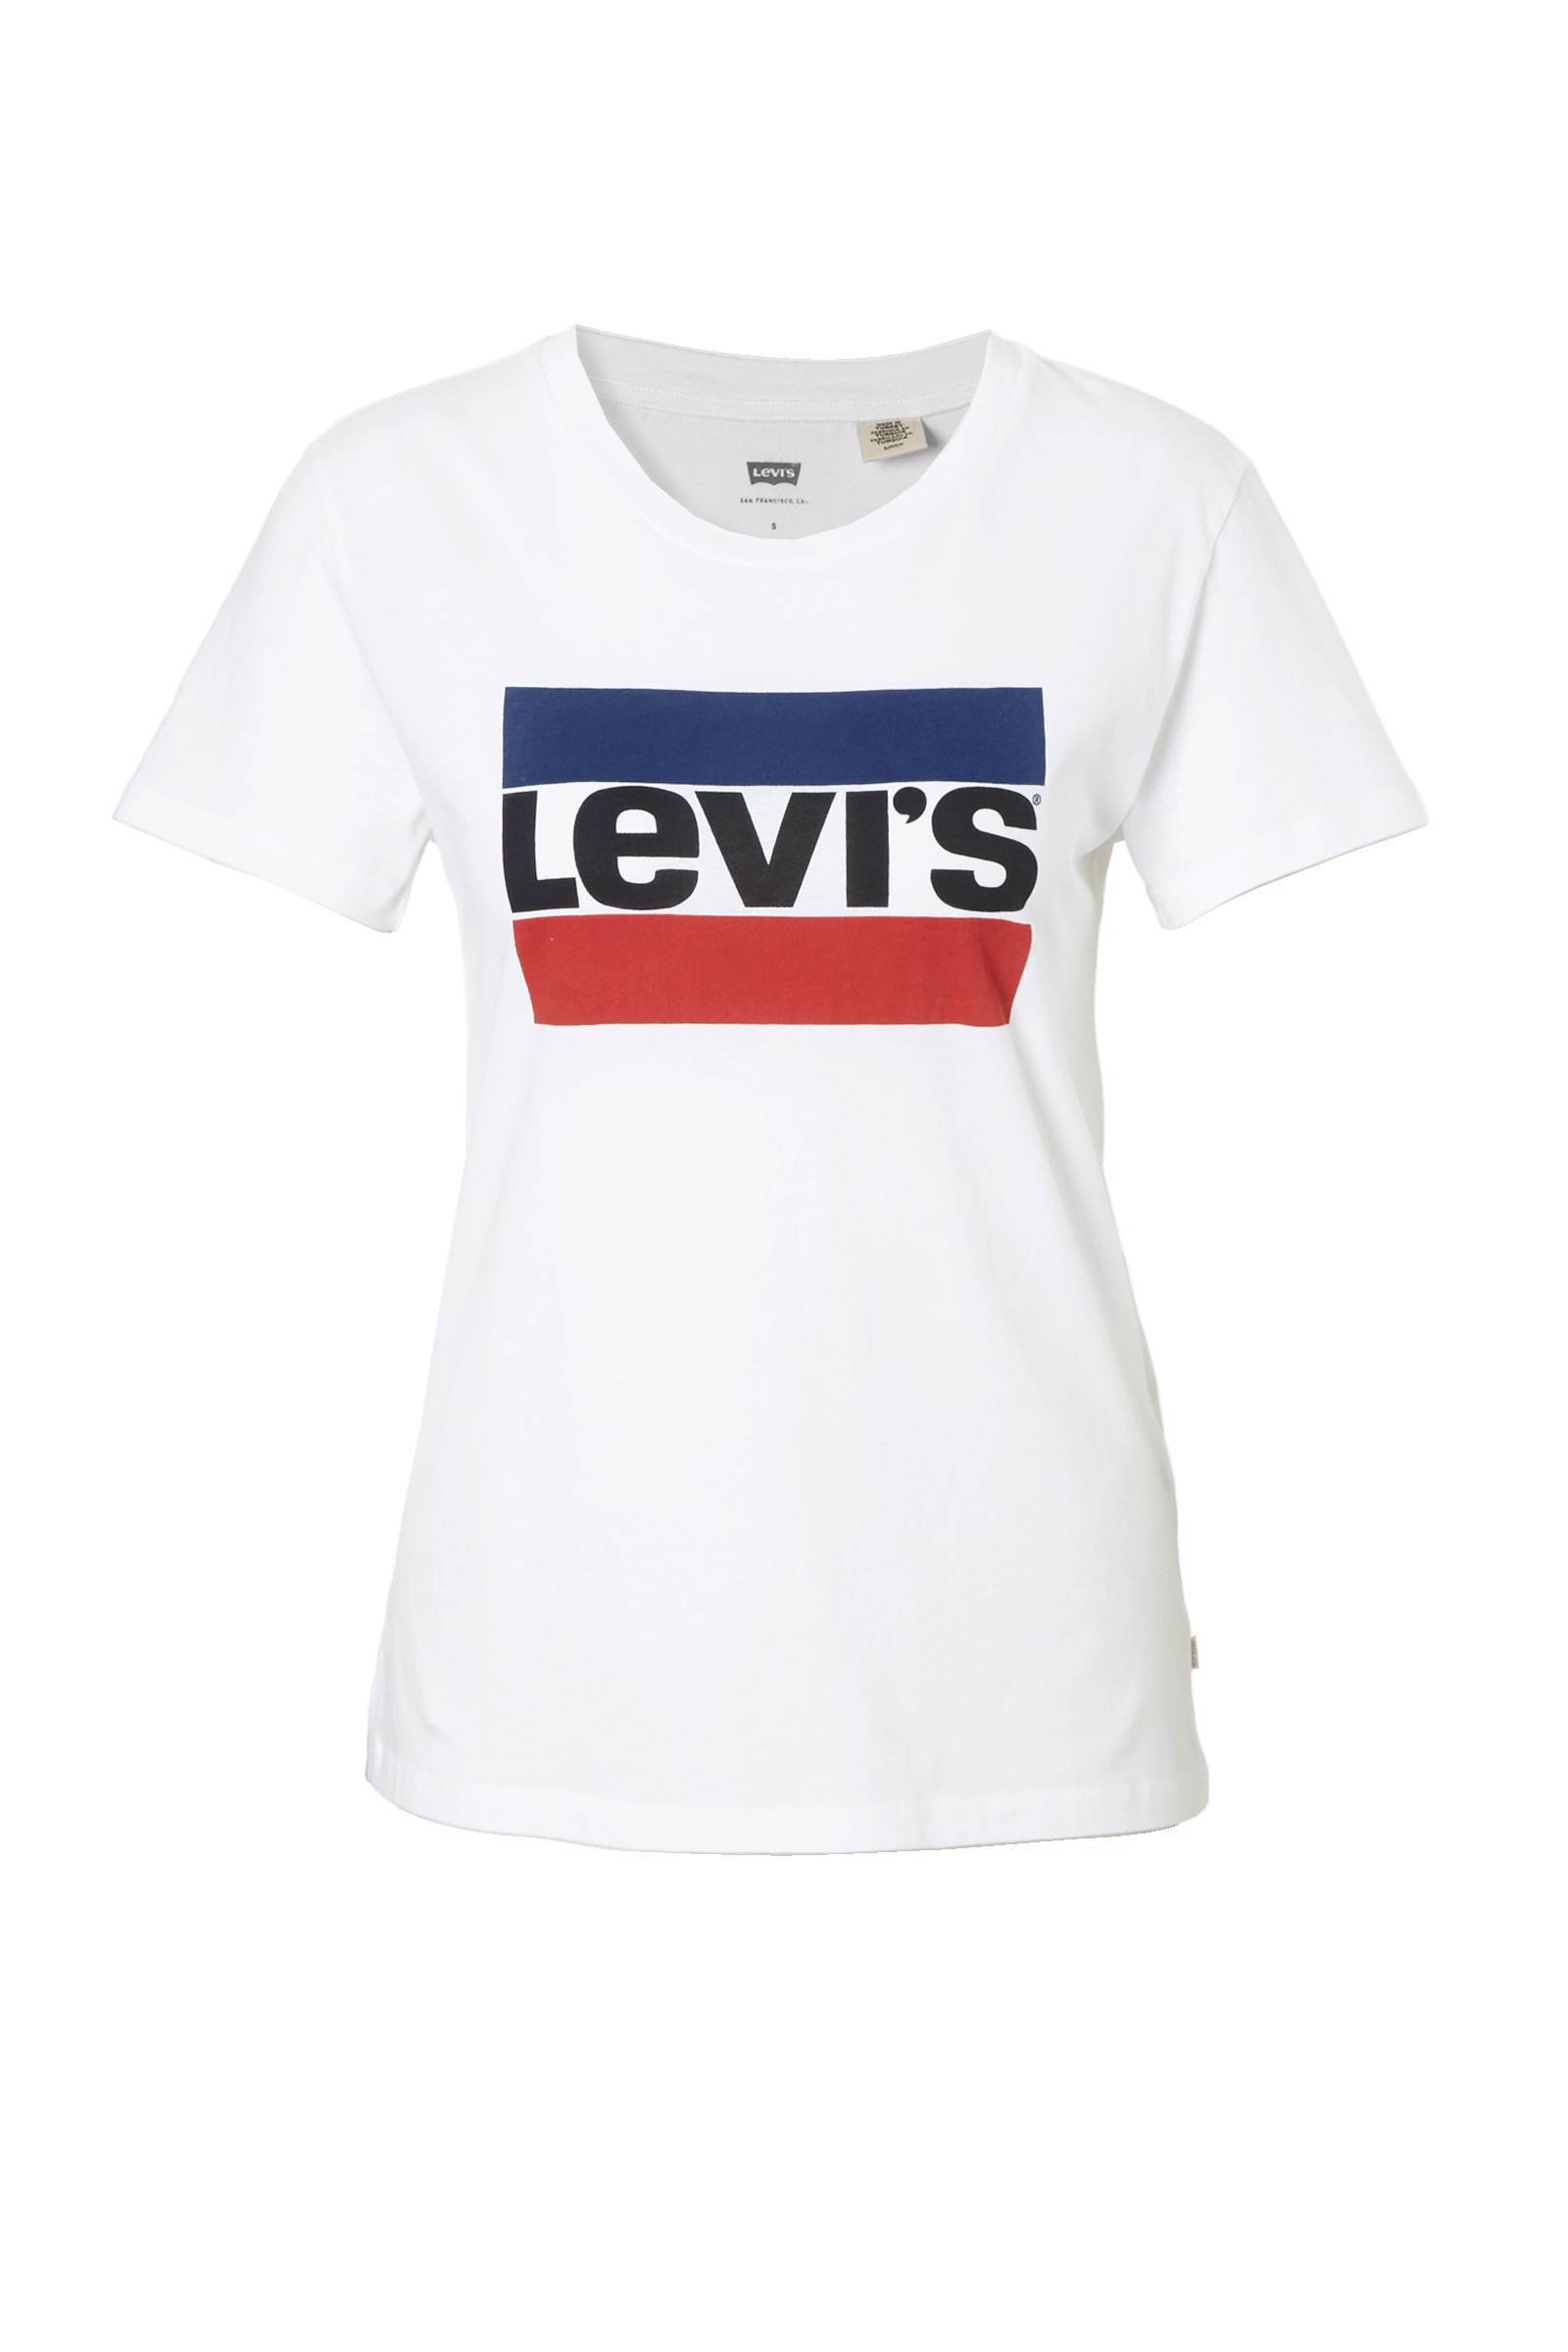 Levi's T-shirt met logo wit | wehkamp